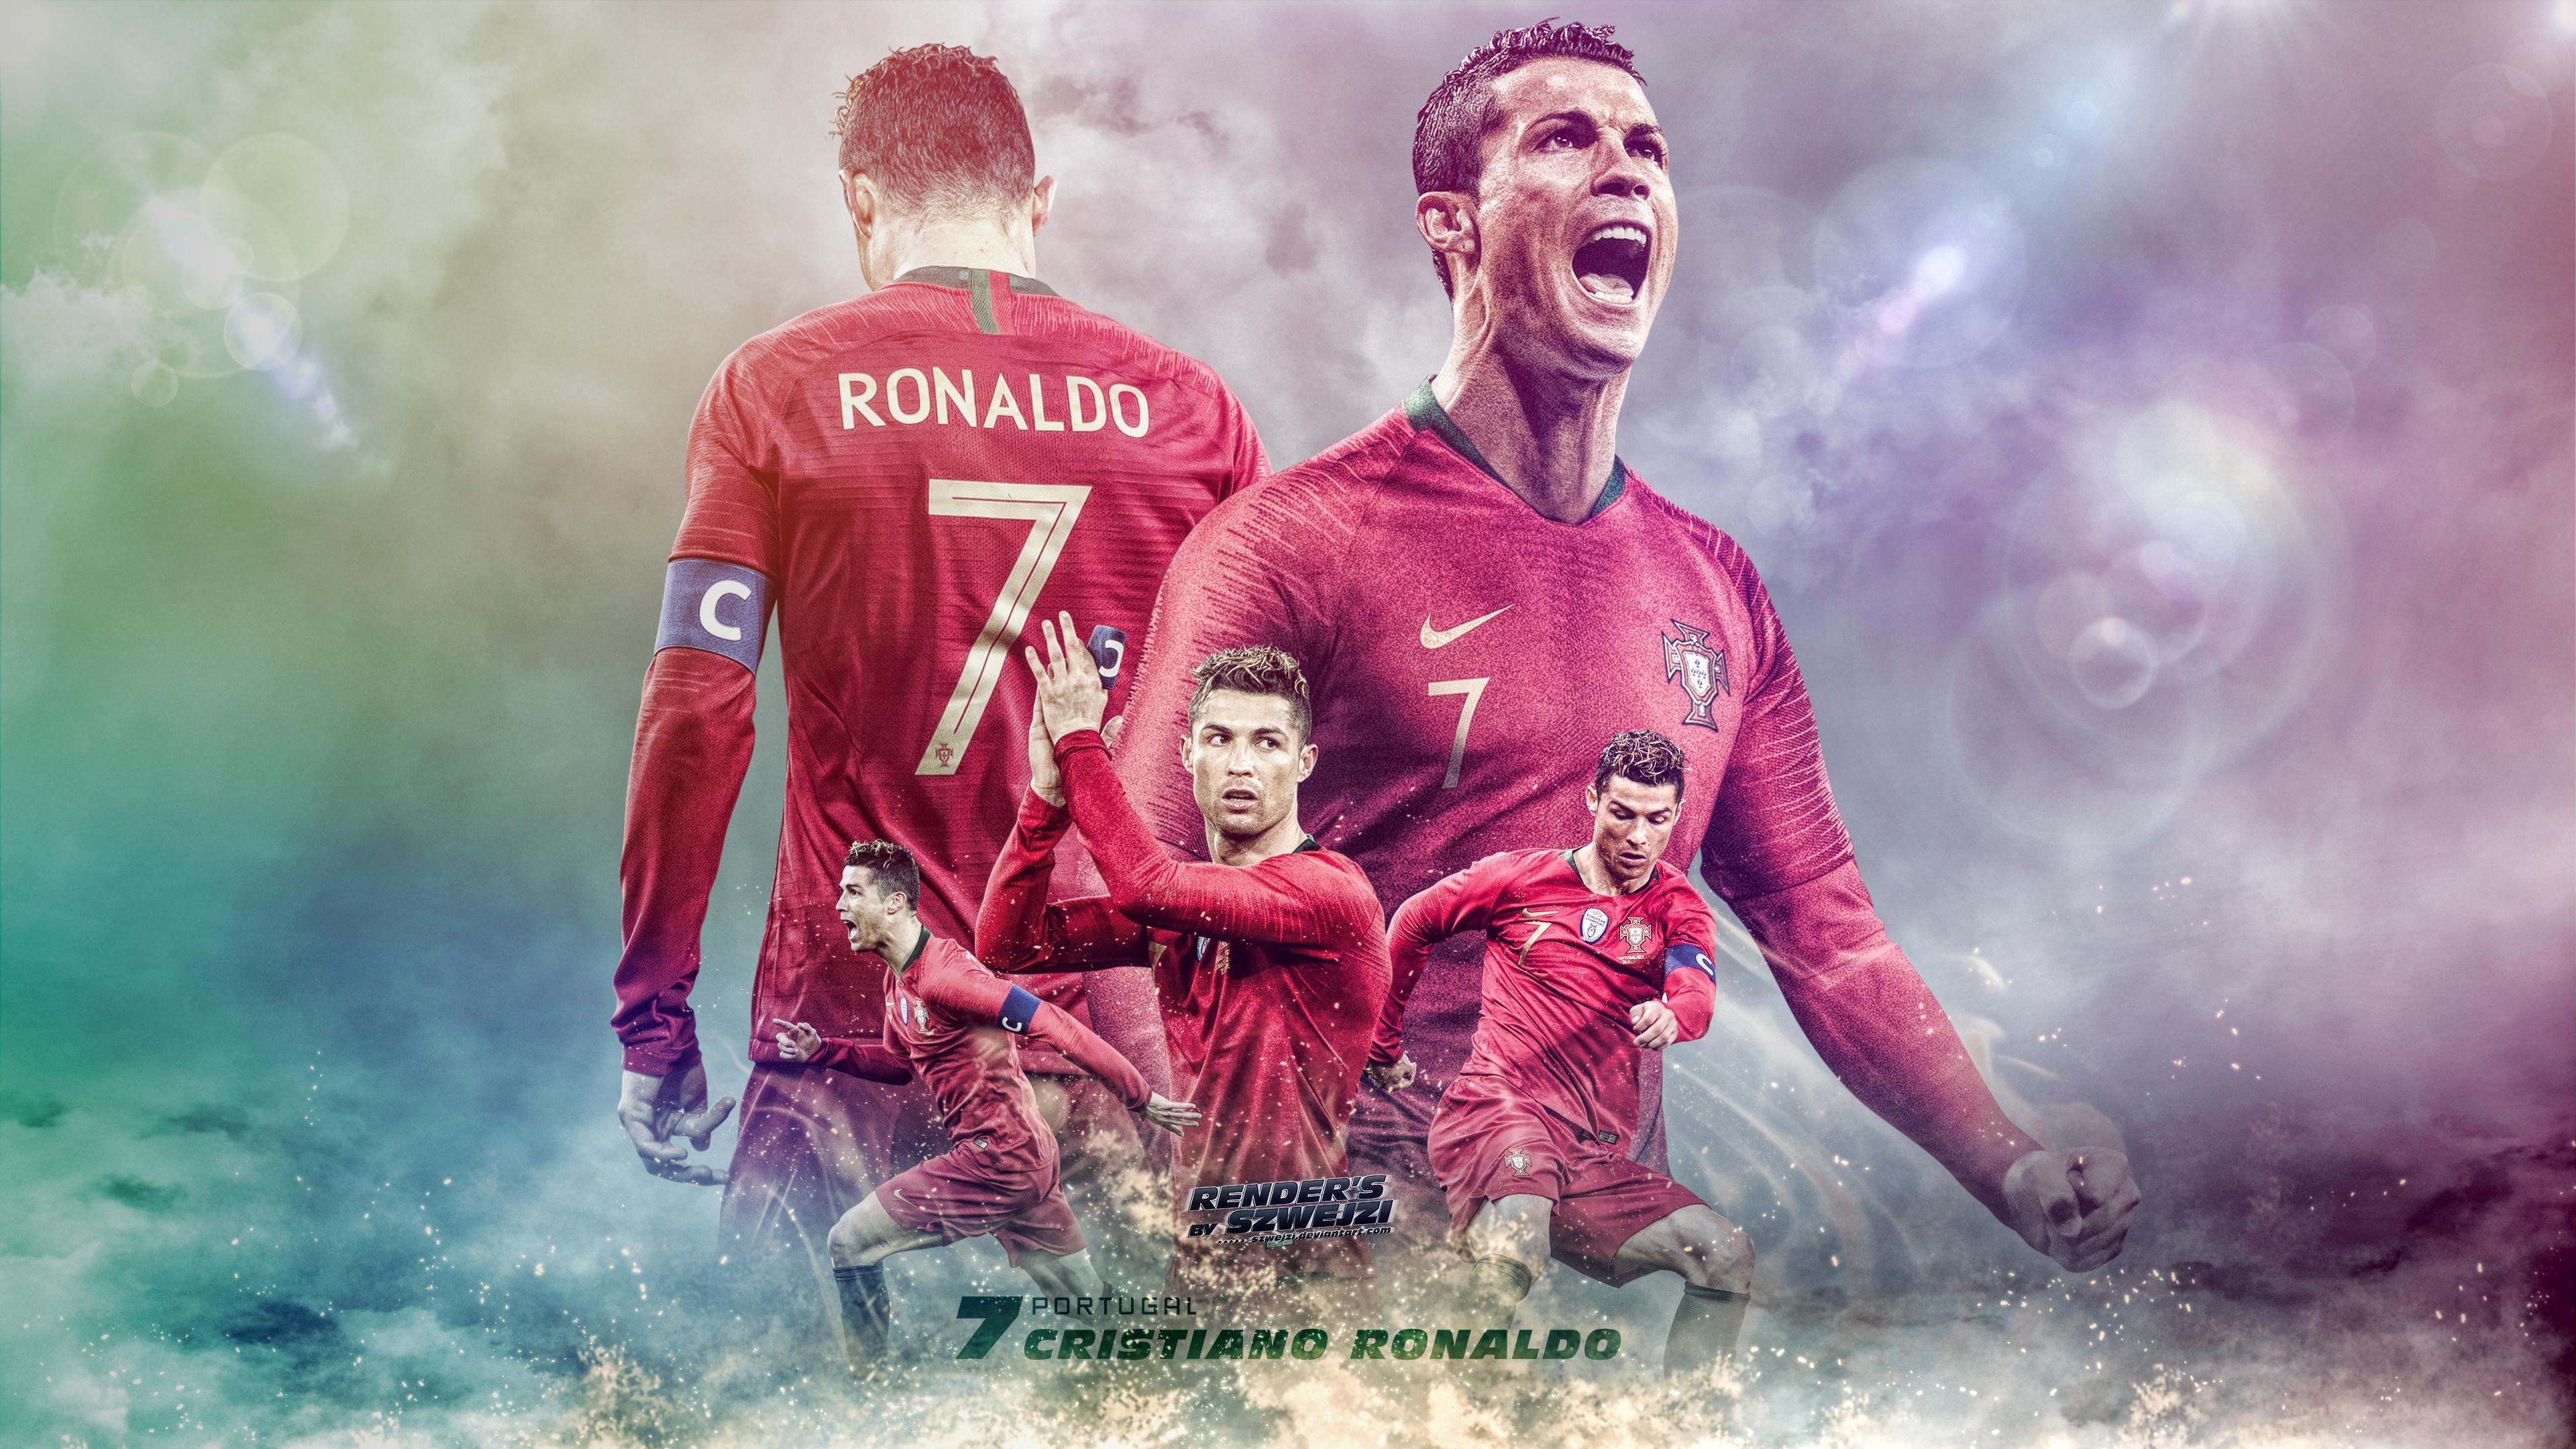 Khám phá ngay những bức hình nền Cristiano Ronaldo 4k độ phân giải cao. Những bức ảnh nghệ thuật được thiết kế đặc biệt cho desktop của bạn với độ sắc nét cực cao, chất lượng hình ảnh tuyệt vời và màu sắc sống động sẽ mang lại cho bạn một trải nghiệm tuyệt vời.